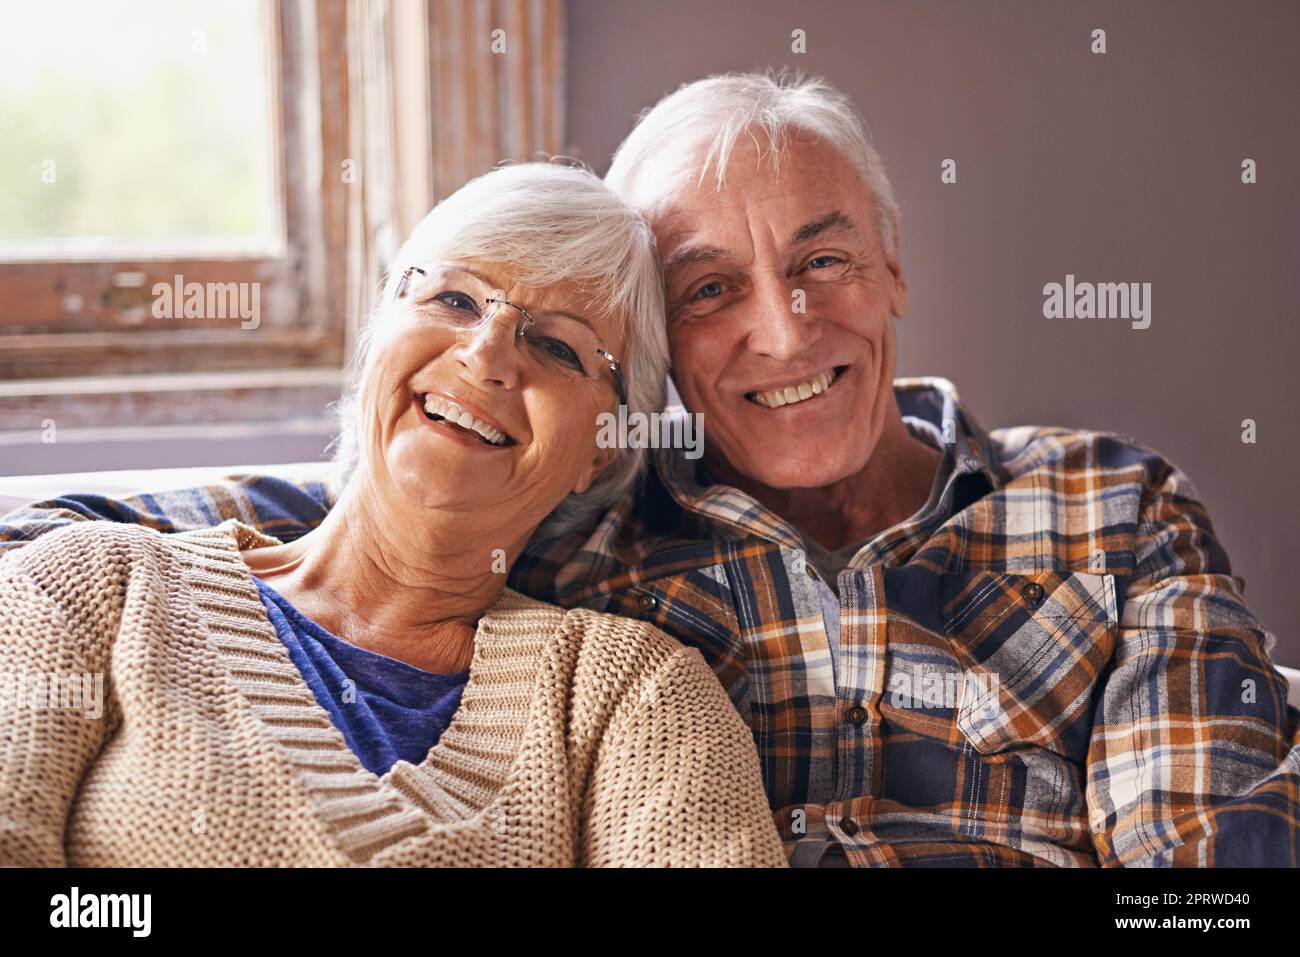 Was wollen wir mehr, wenn wir uns gegenseitig haben. Ein Porträt eines glücklichen älteren Paares, das zu Hause in ihrem Wohnzimmer sitzt. Stockfoto